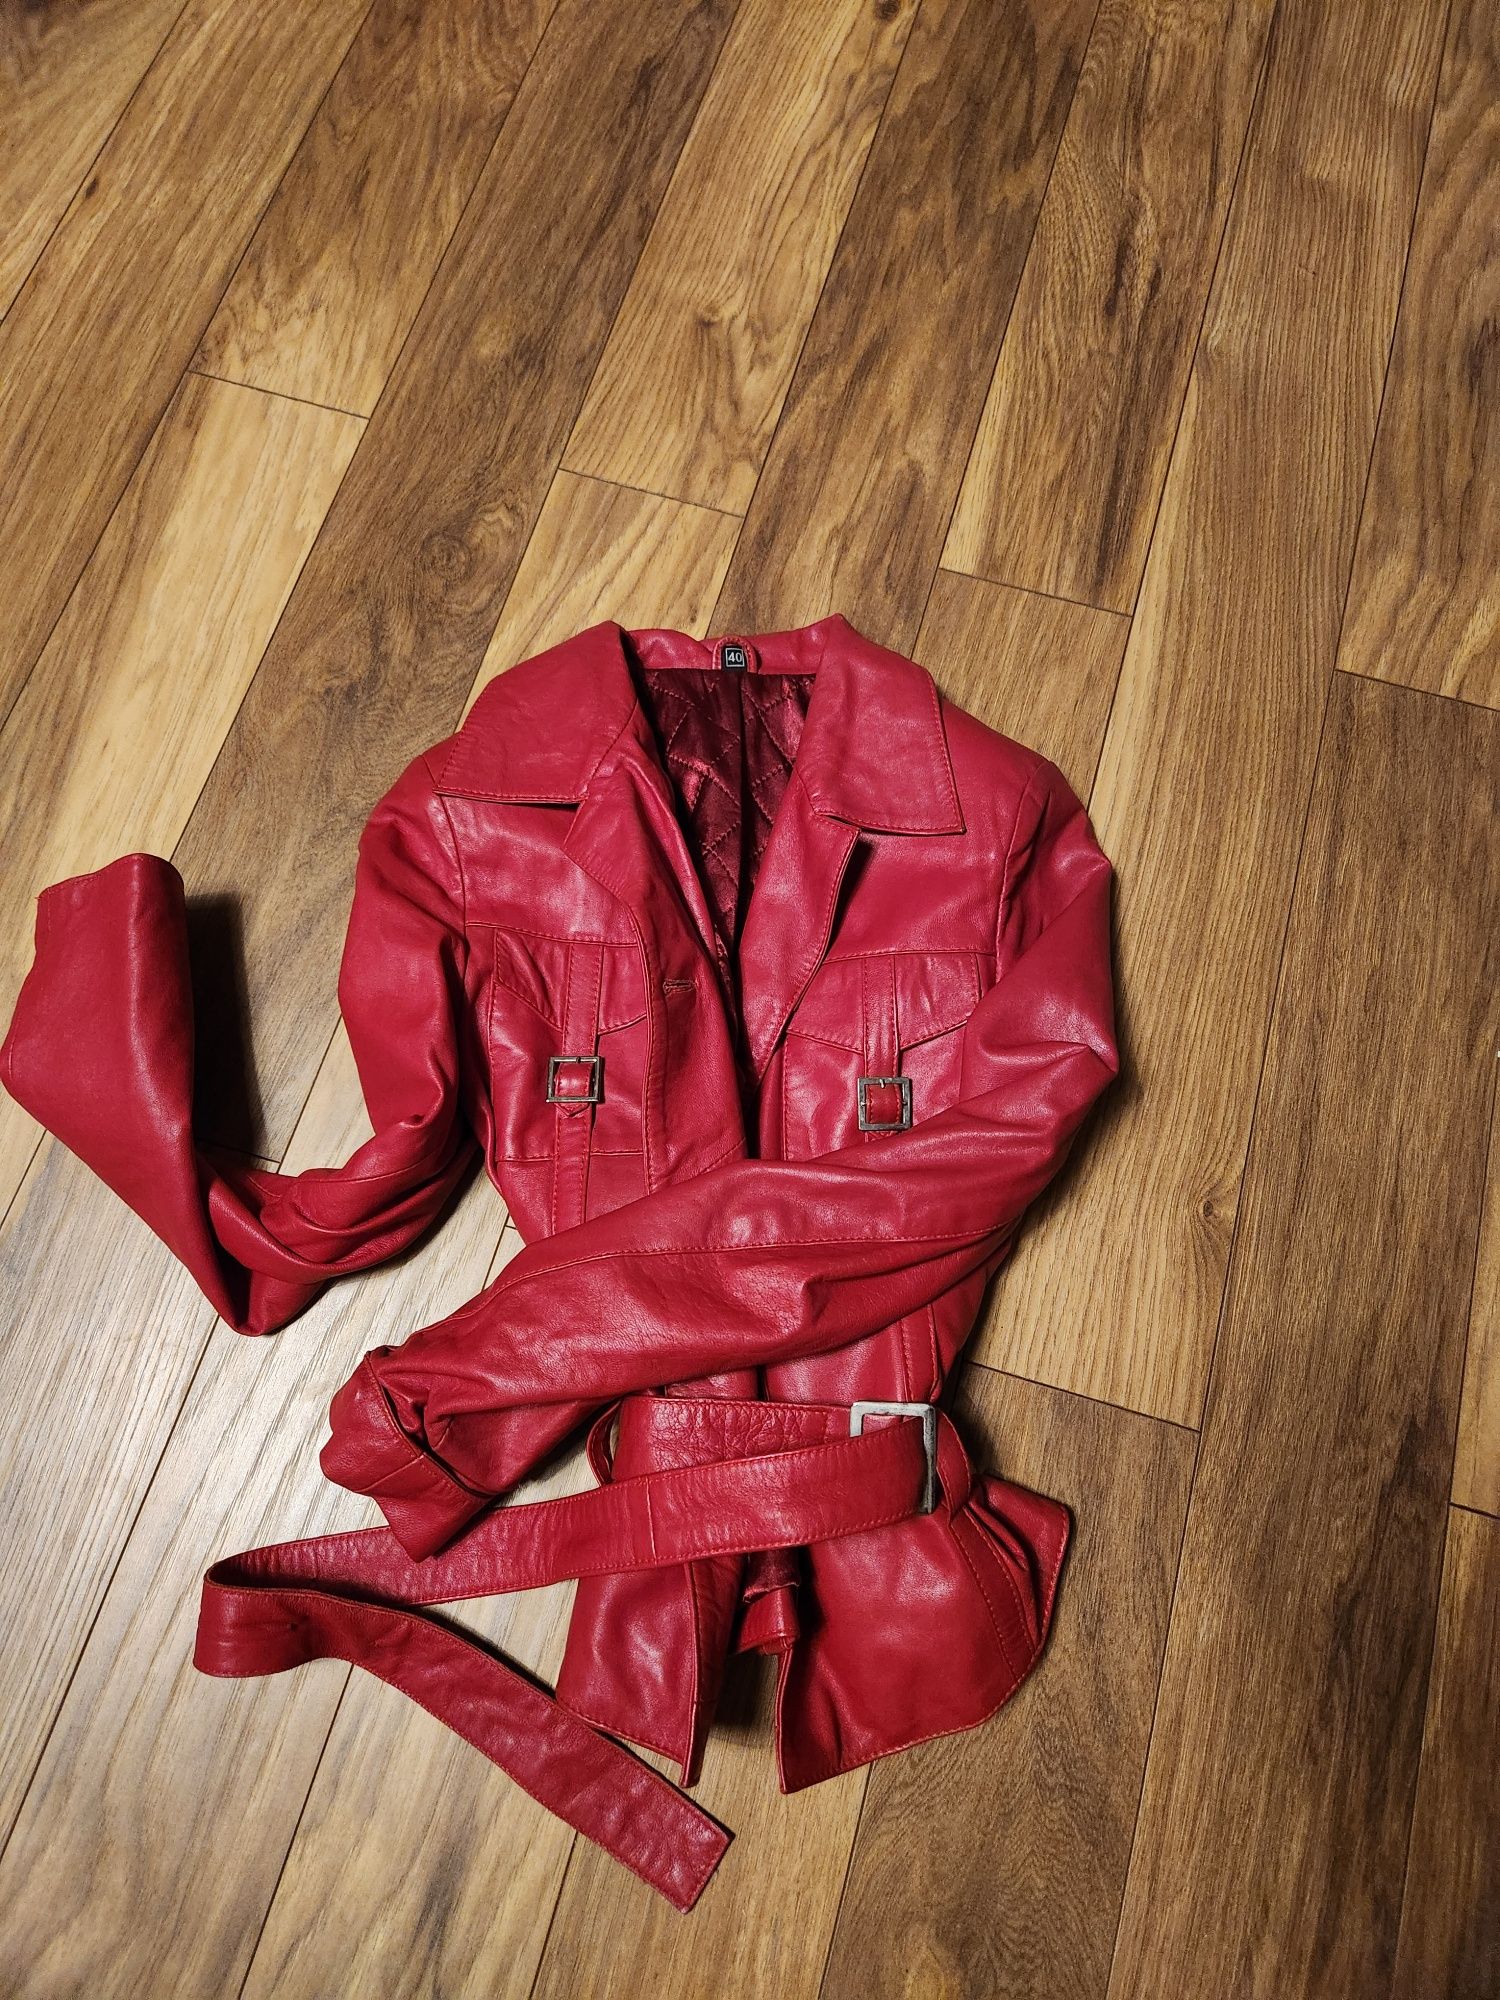 Дамско манто Zara, червено яке кожа, палто Bershka